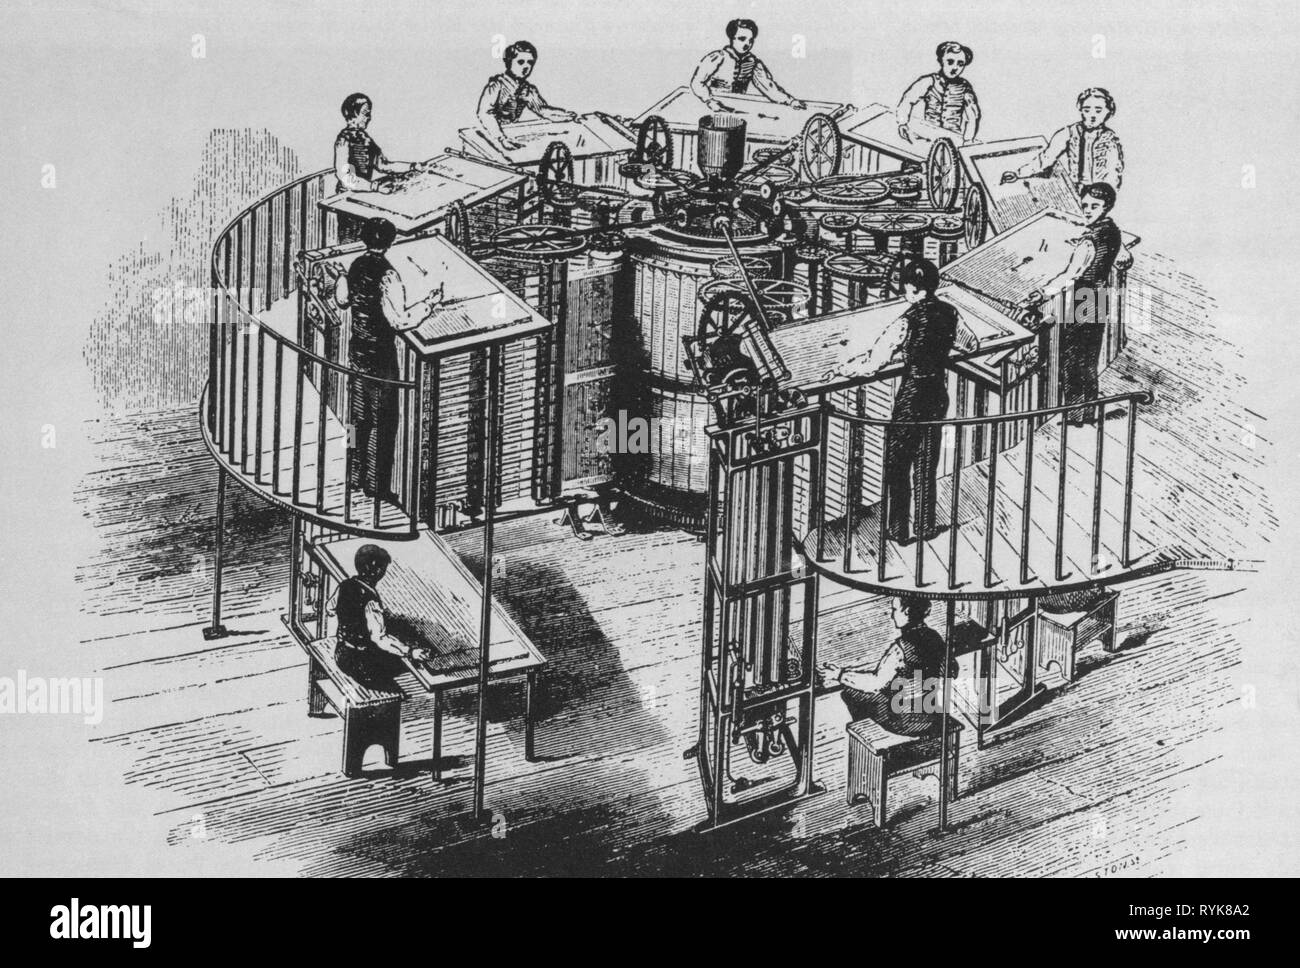 L'industrie, imprimer, appuyez sur rotatif vertical, inventé par Auguste Applegarth (1788 - 1871), 1846, gravure sur bois, 19e siècle, l'artiste n'a pas d'auteur pour être effacé Banque D'Images